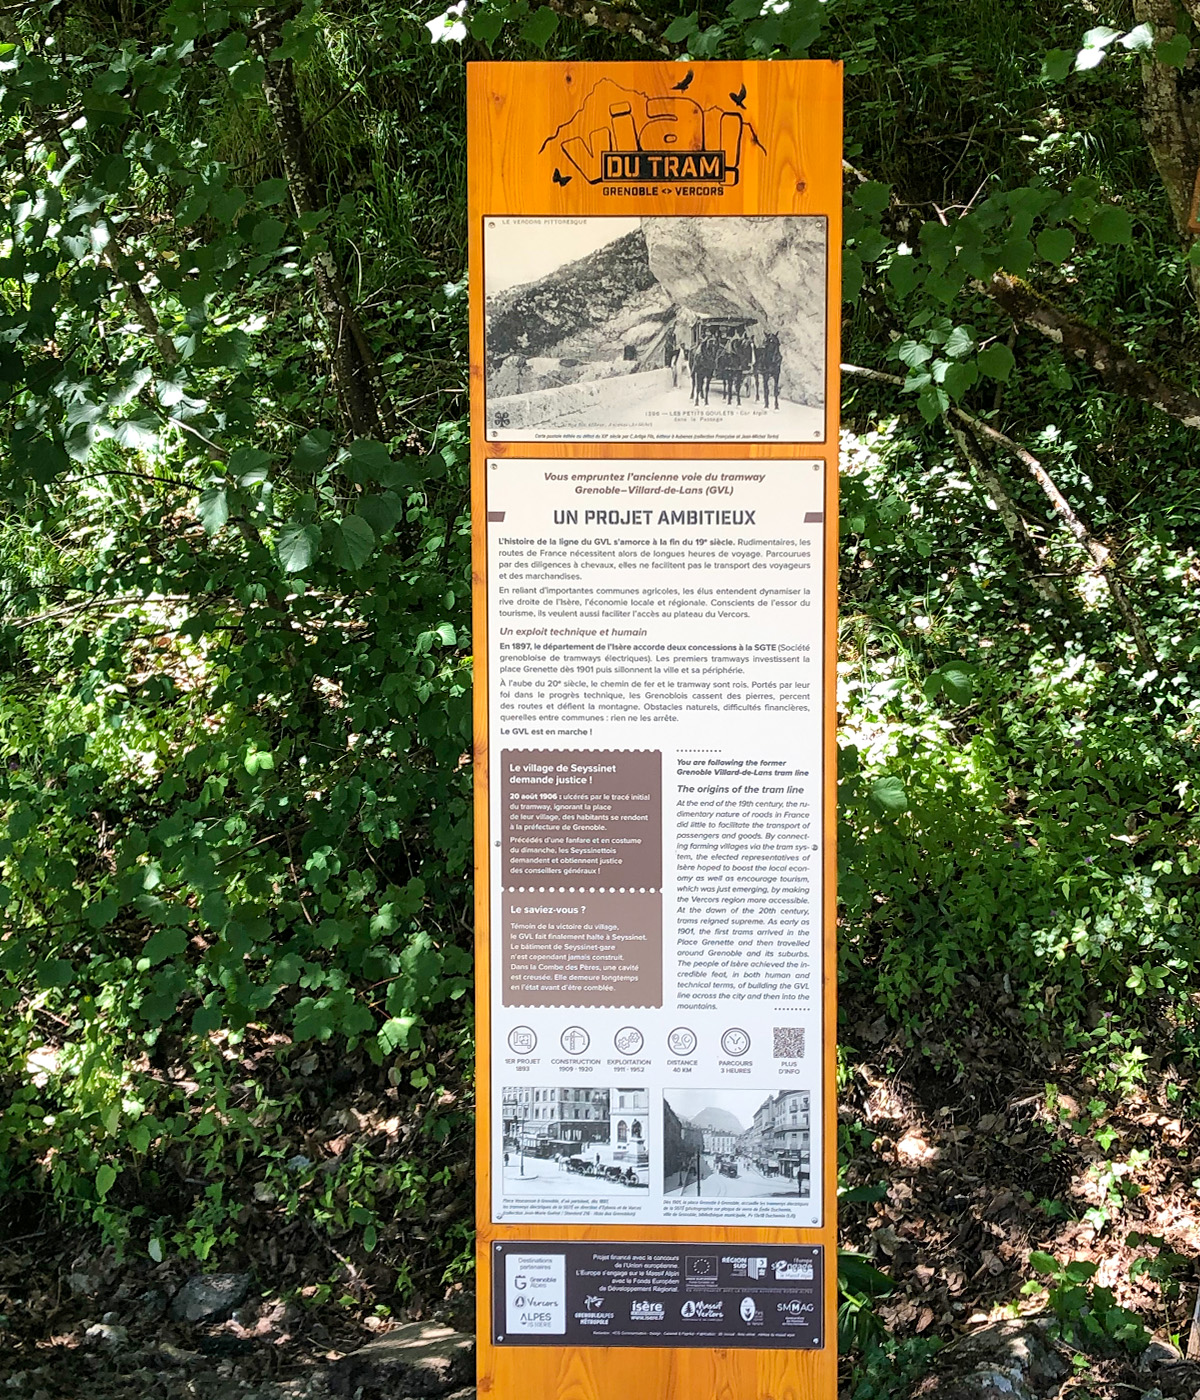 Panneaux d'exposition sur le patrimoine de la Via du Tram créés pour Grenoble-Alpes Métropole par Caramel & Paprika - Panneau 1 intitulé "Un projet ambitieux" installé sur site.